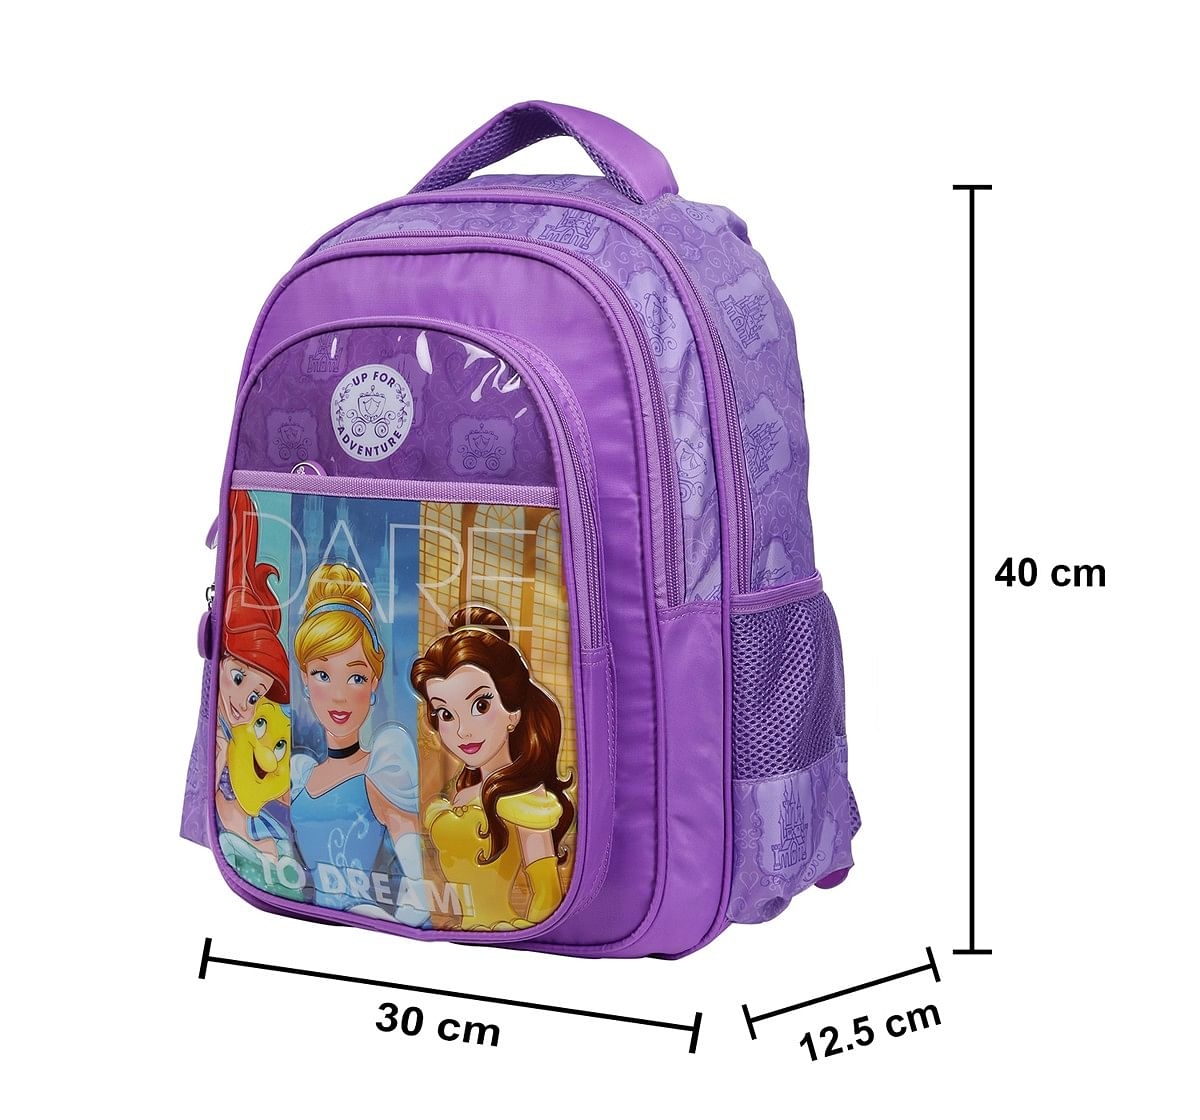 Simba Princess Adventure 16 Backpack Multicolor 3Y+